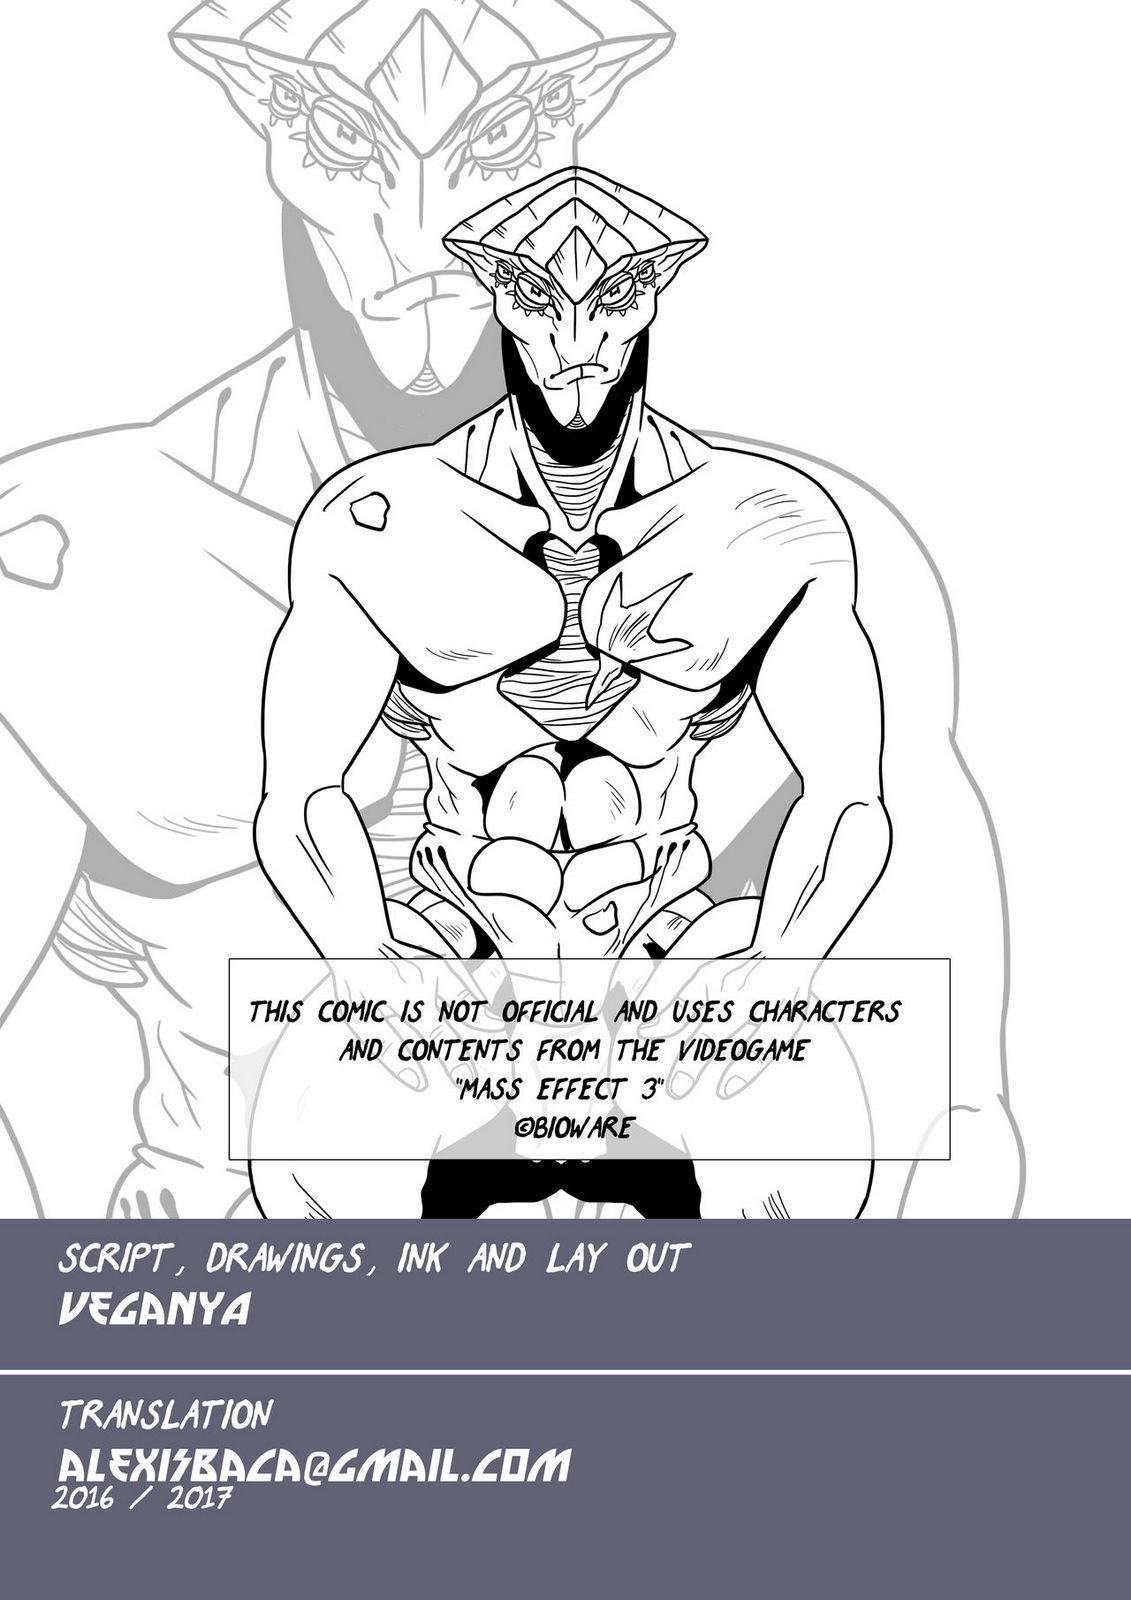 Javik Romance (Mass Effect) by VegaNya page 3